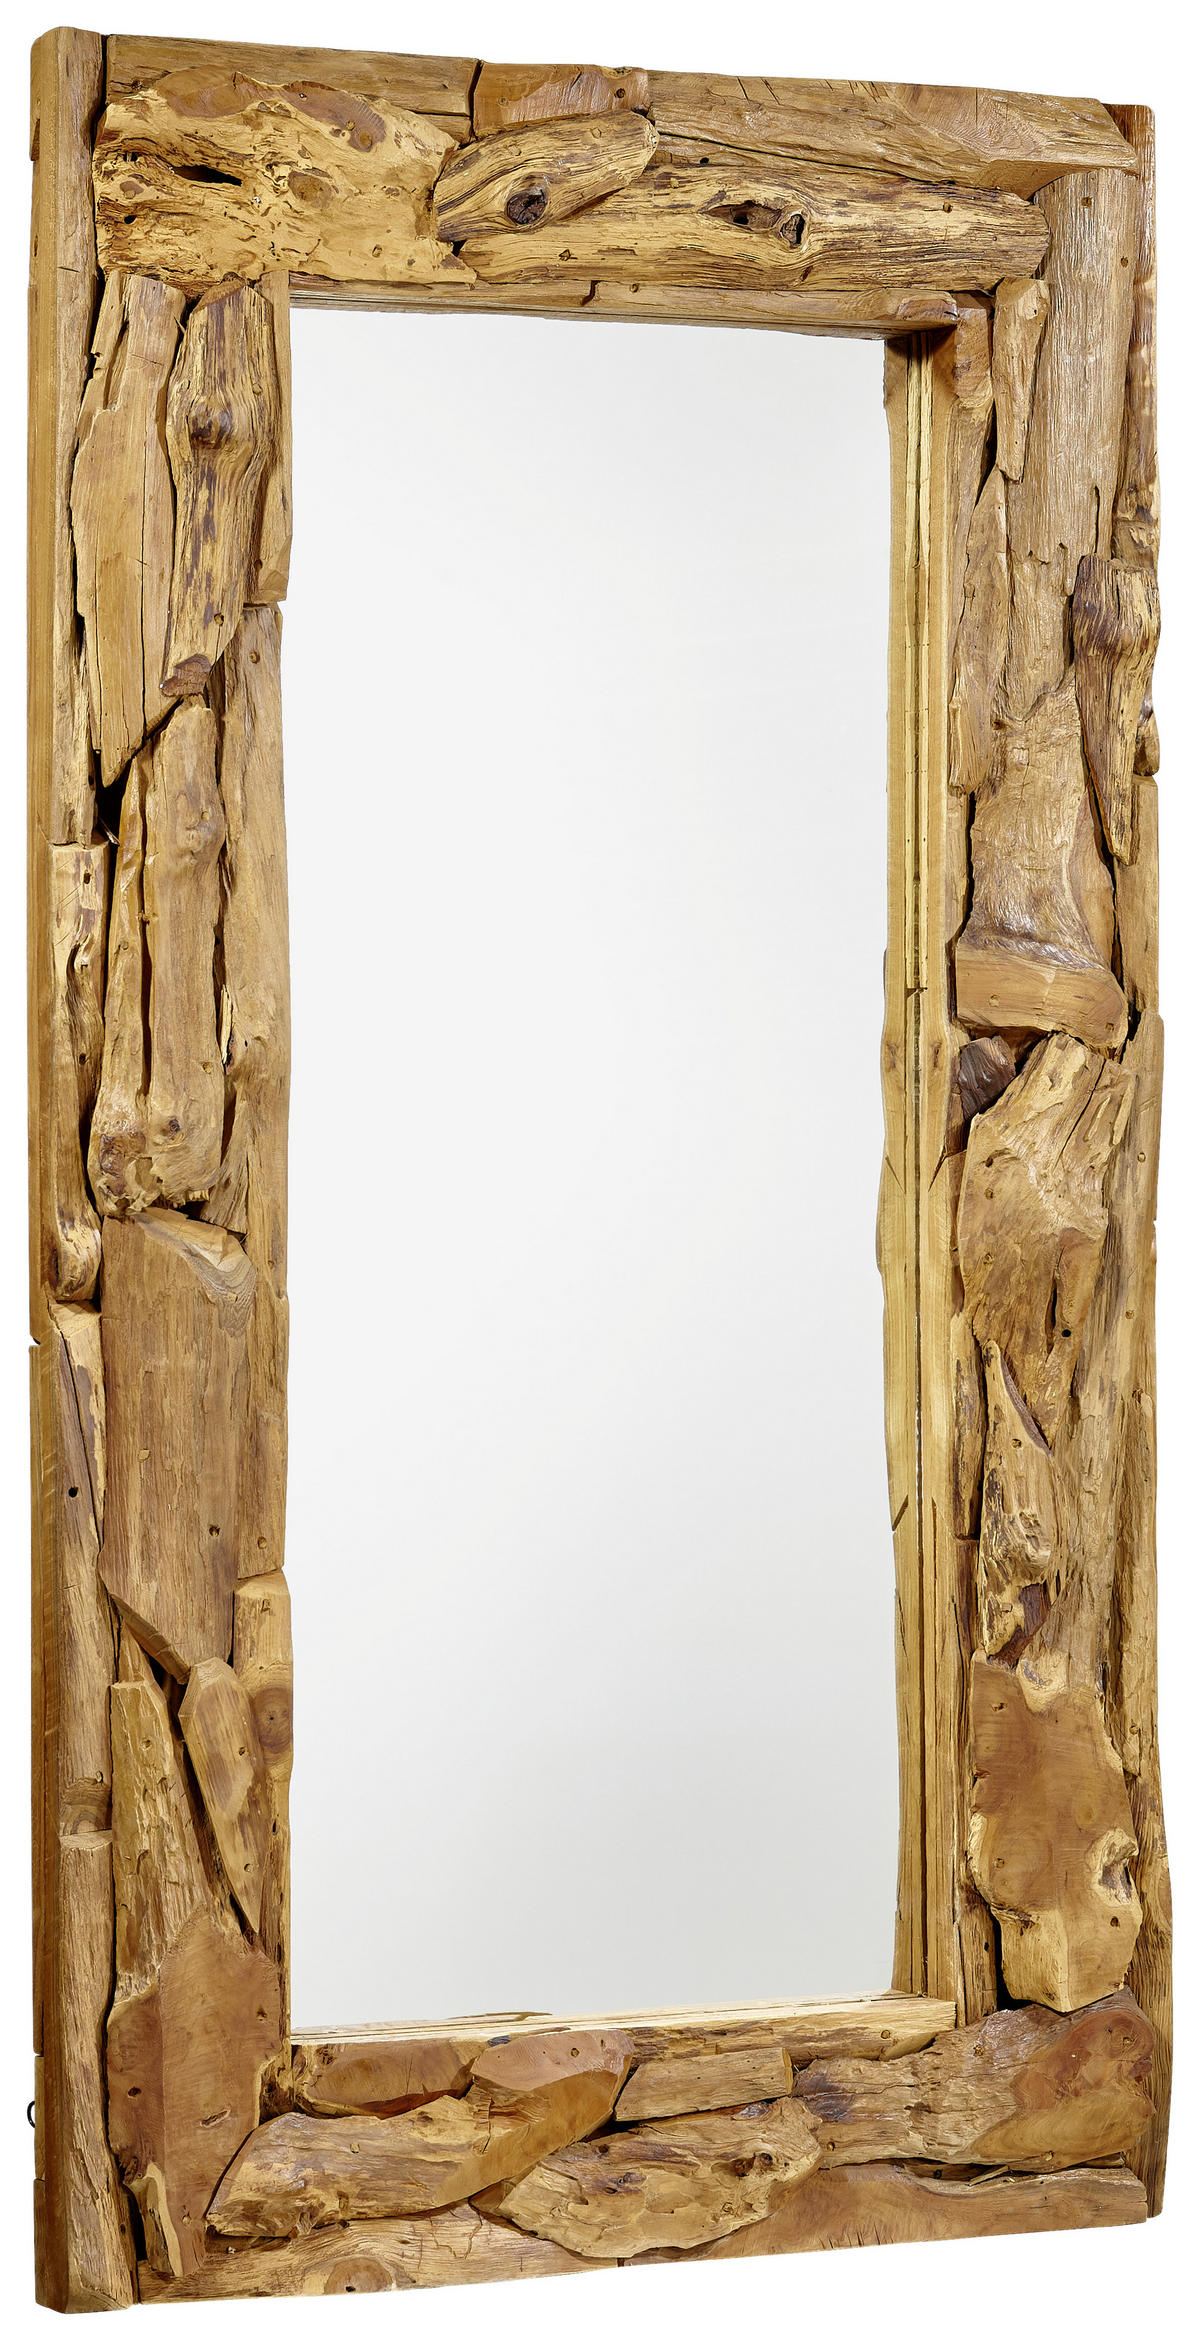 Spiegel mit Holzrahmen 135 x 195 mm